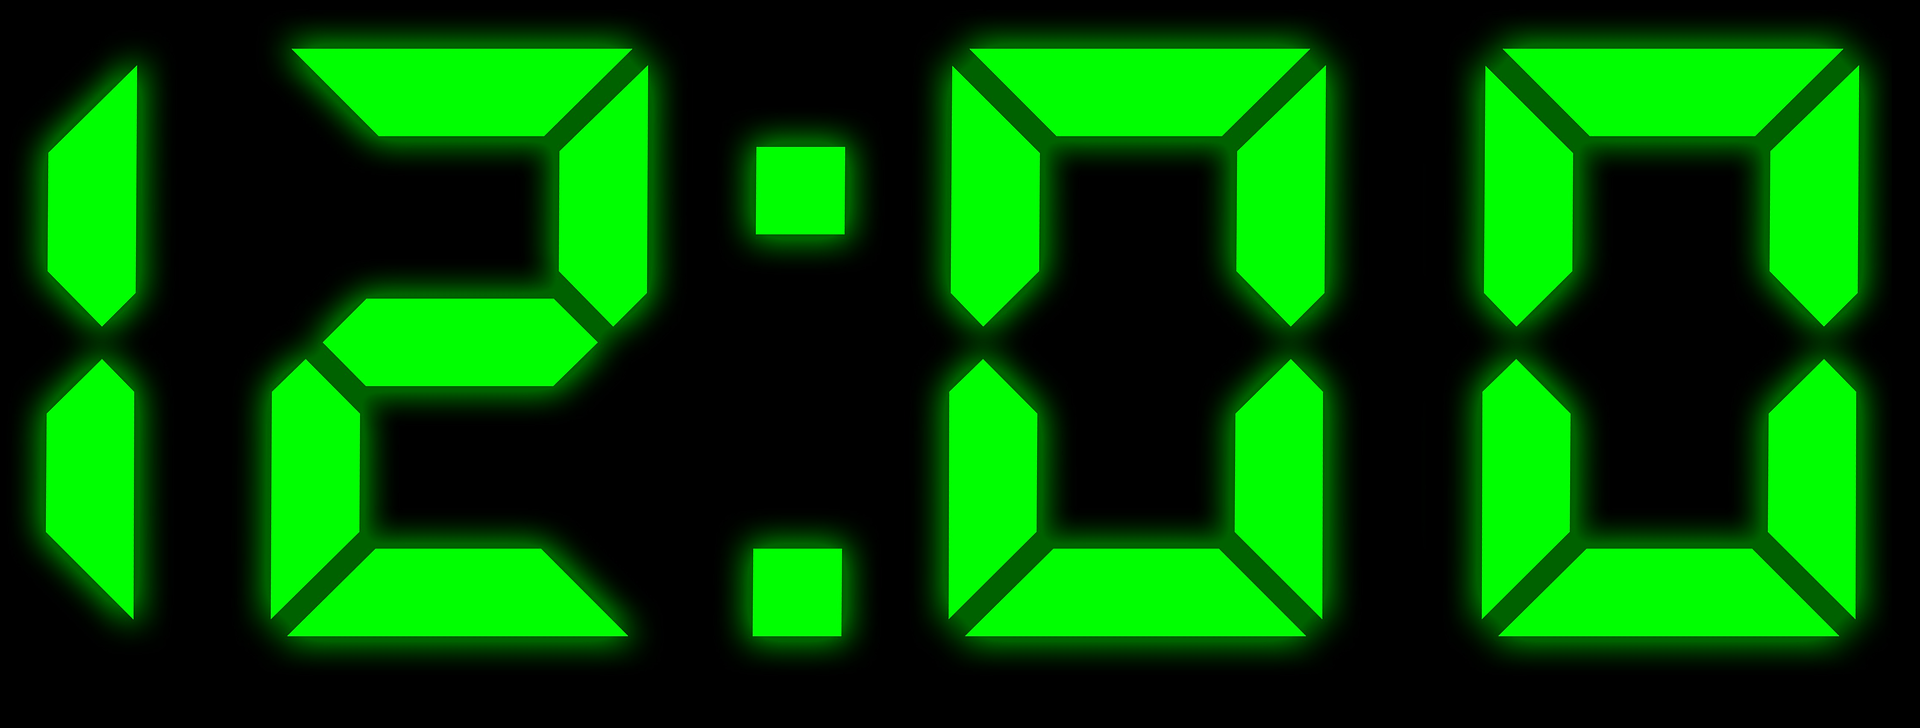 Цифры электронных часов. Электронные часы зеленые. Часы цифровые зеленые. Электронные часы 12 00. 11 00 музыка